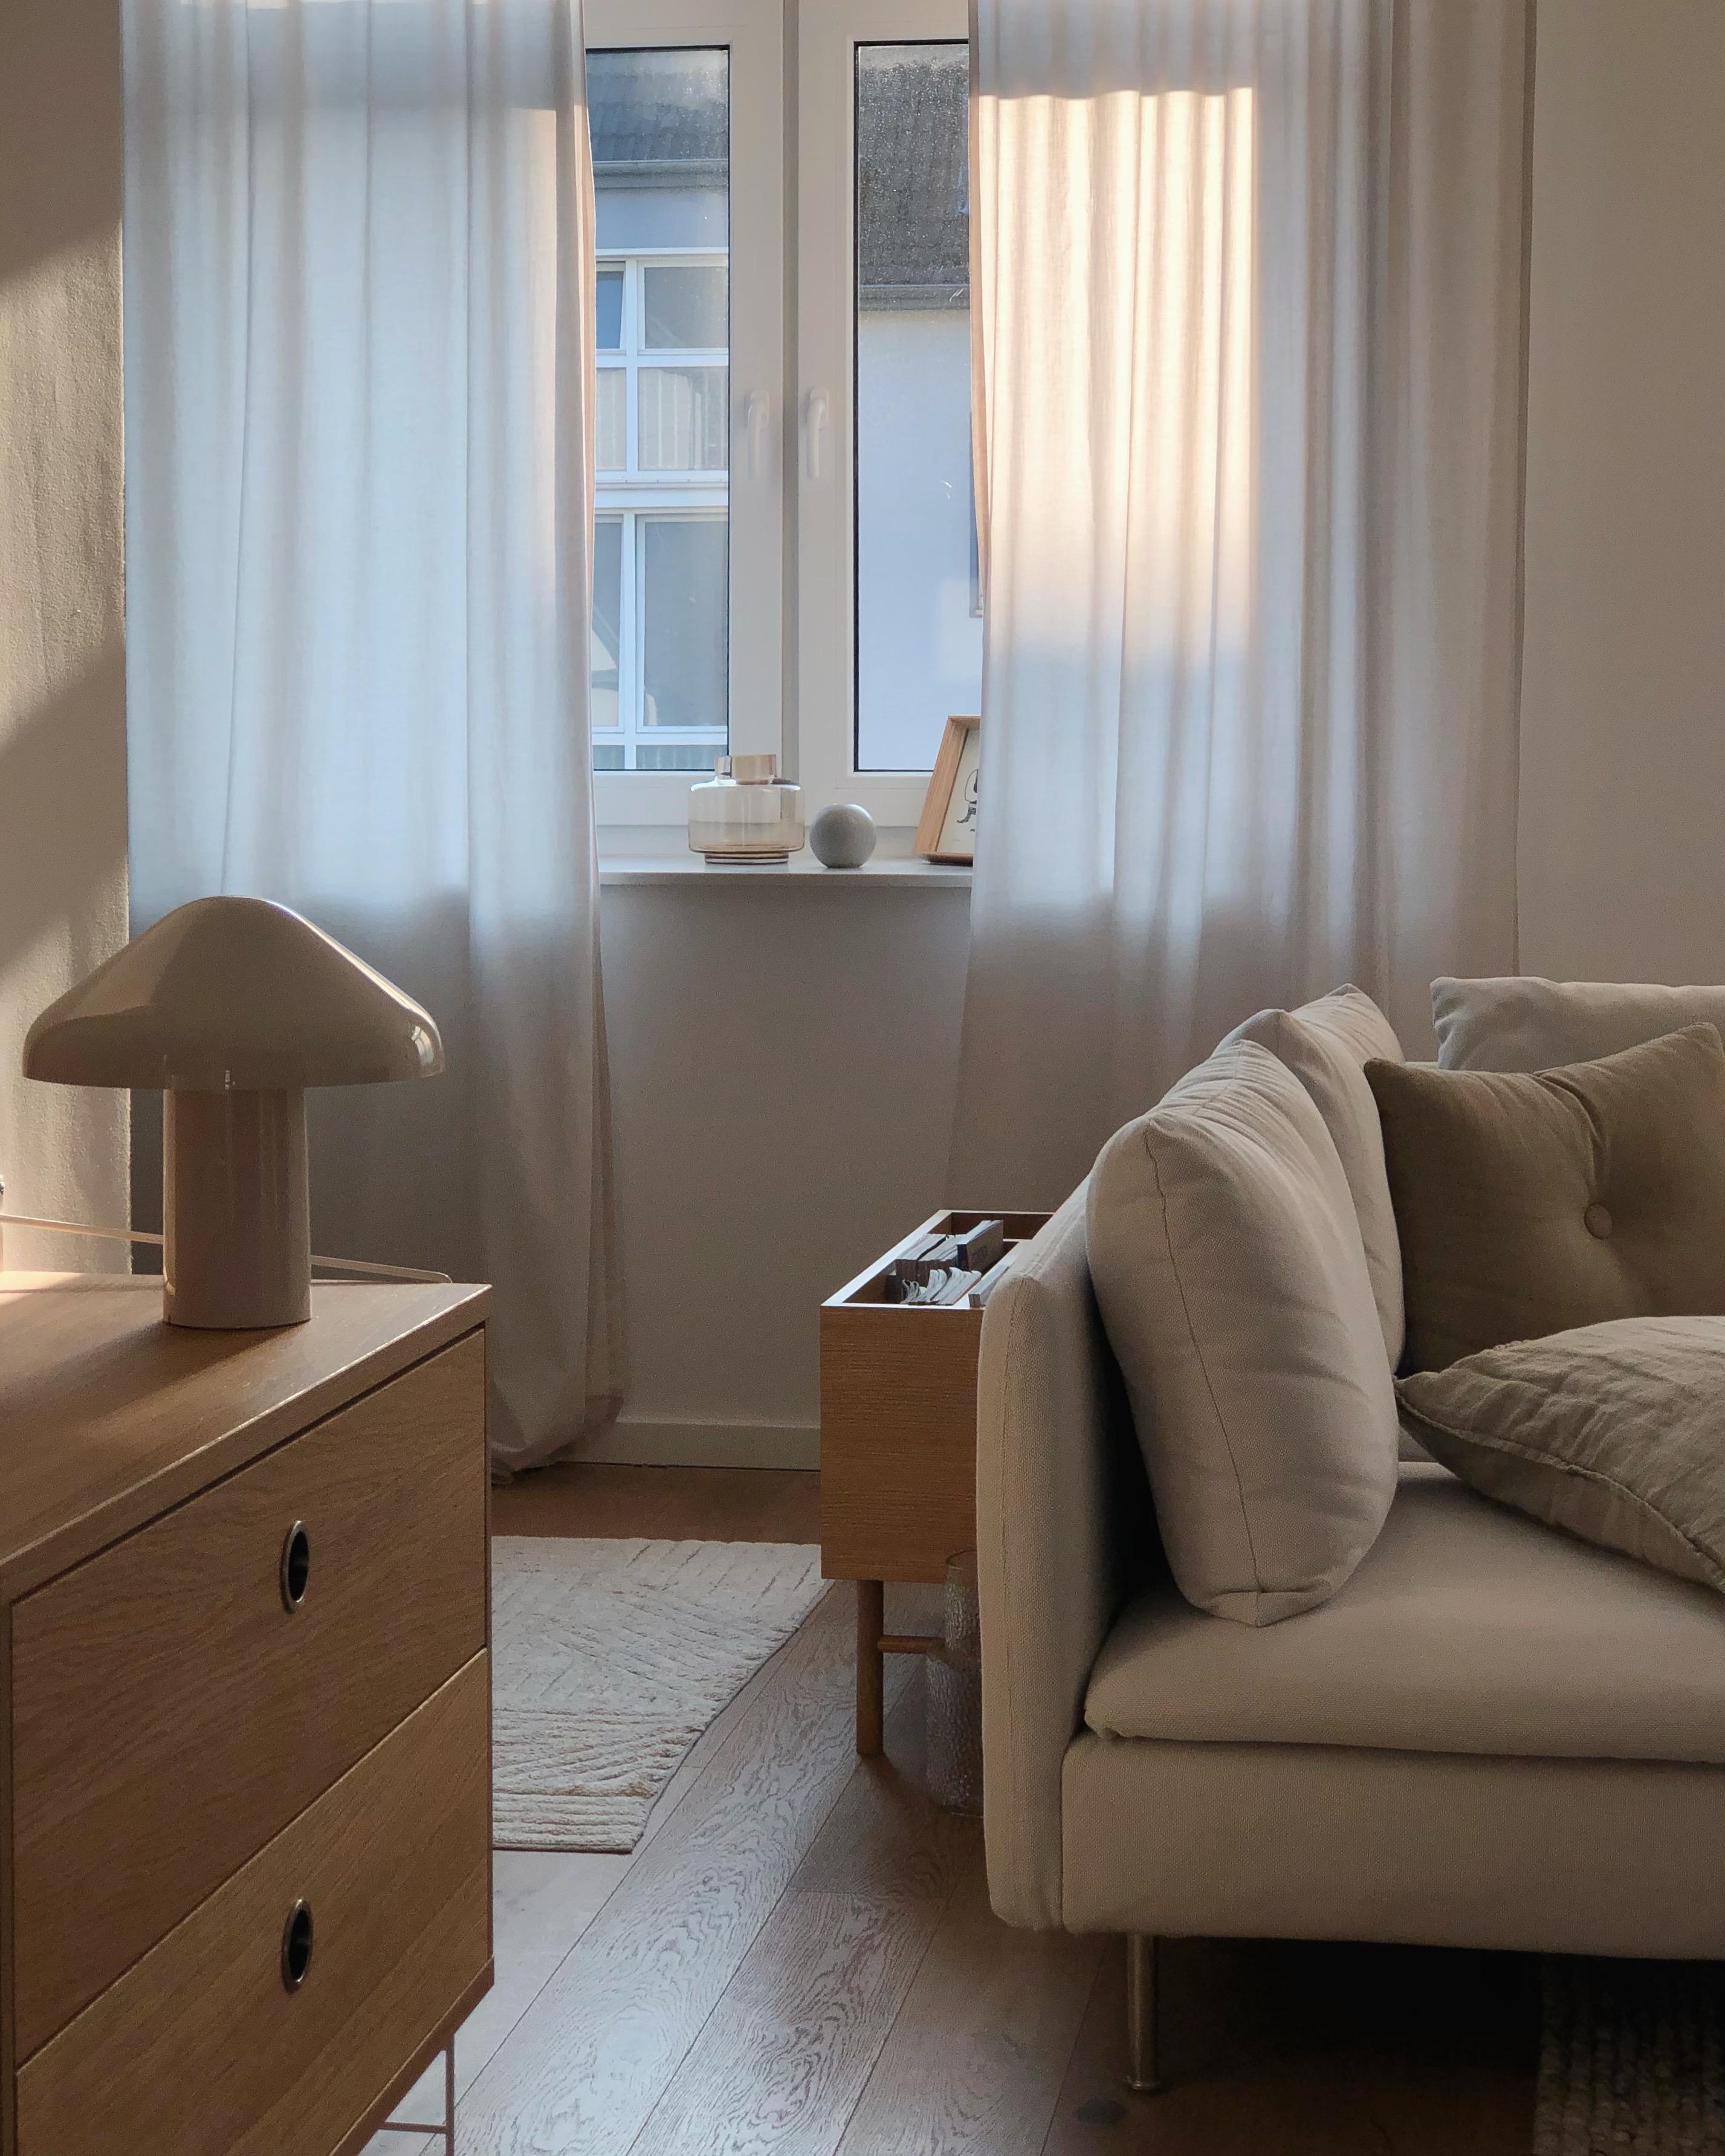 #wohnzimmer #livingroom #couch #couchstyle #ikea #stringfurniture #beige #minimalismus #home #interior #light #skandi 